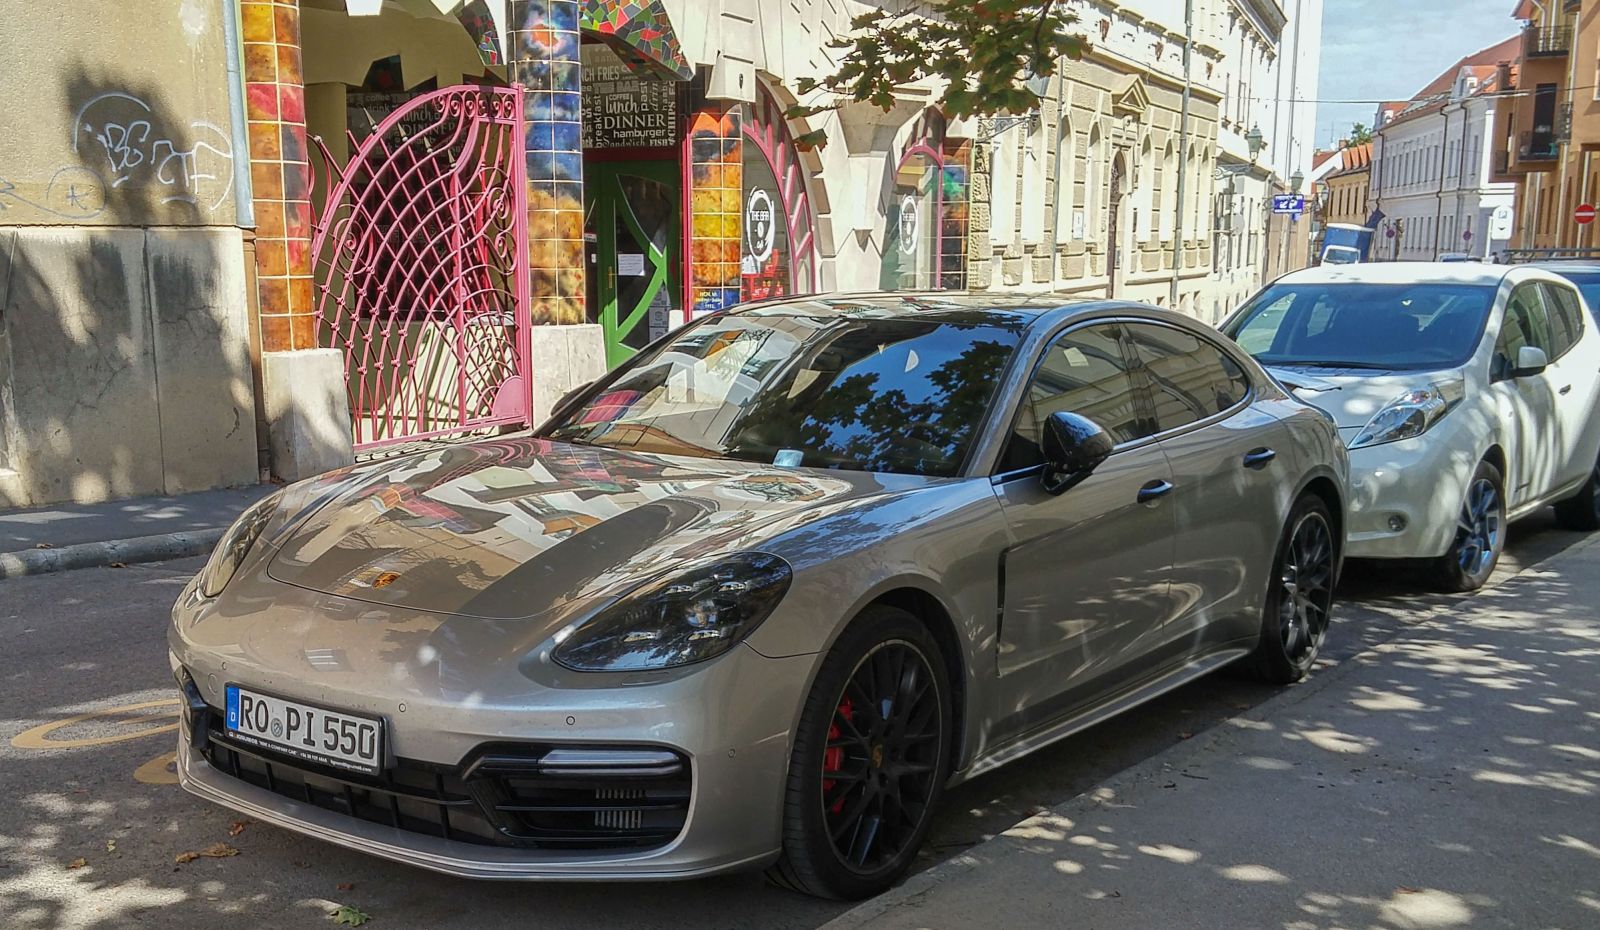 Porsche Panamera Mk2. Foto: 08.2021. Ro pi (auf dem Kennzeichen) bedeutet Slazstange auf ungarisch!